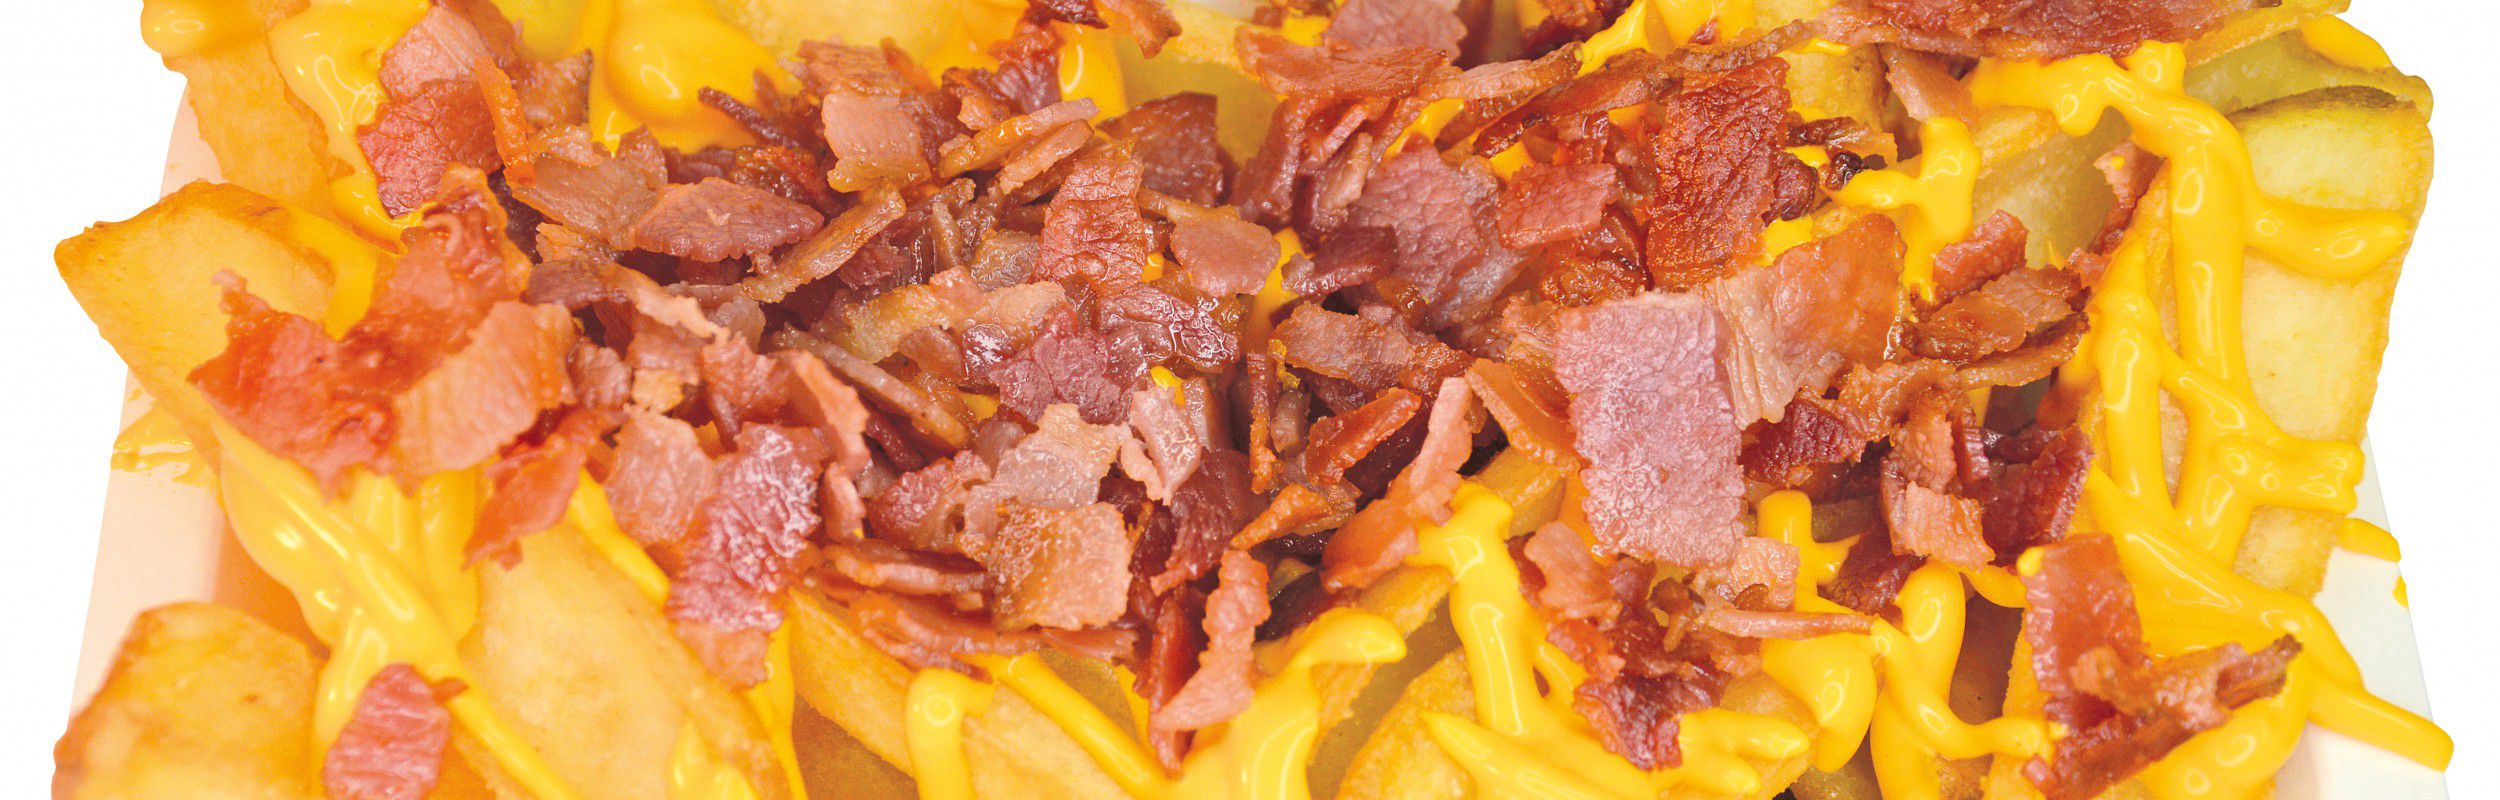 AMERICAN FRIES!😋 - Croccanti patate ricoperte di golosa salsa cheddar e bacon croccante
Provale!!